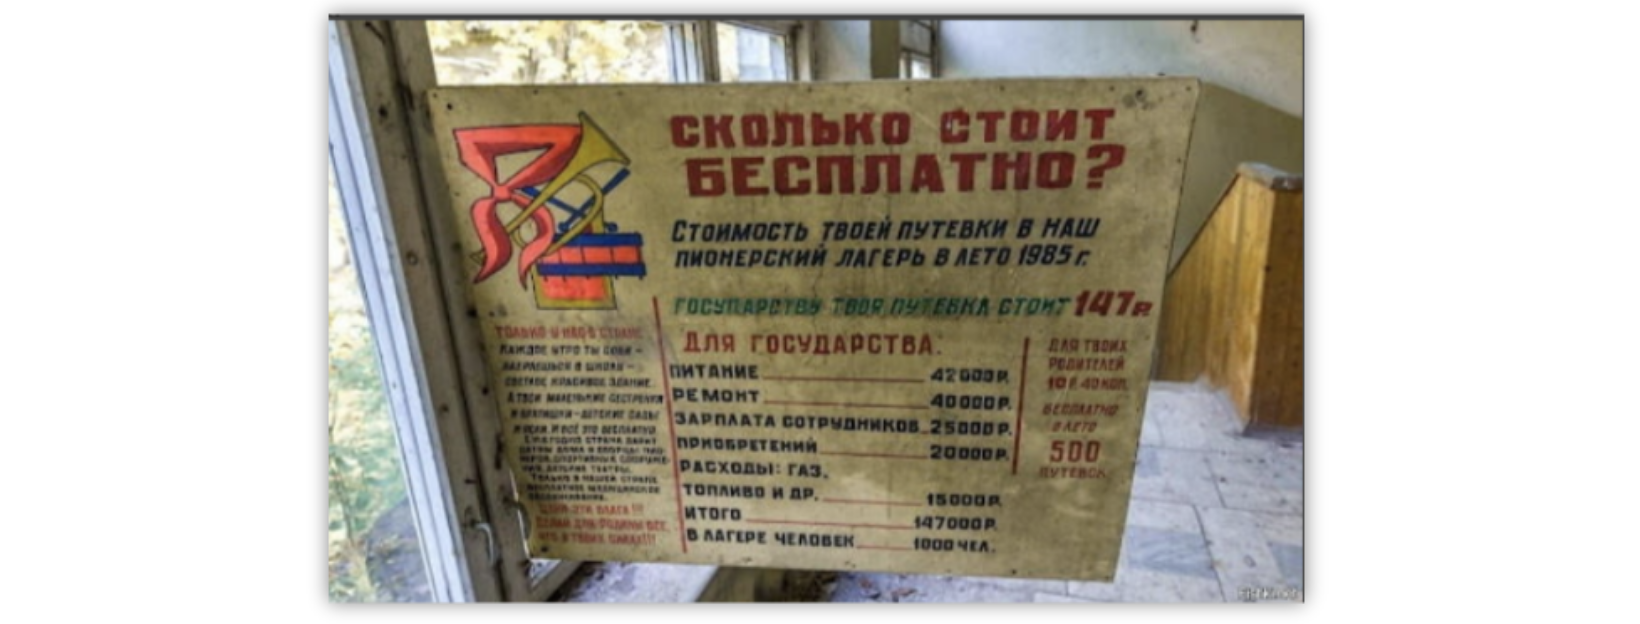 147 рублей в 1985 г., это примерно 35 453,85 руб. в 2023, по данным калькулятора инфляции.  